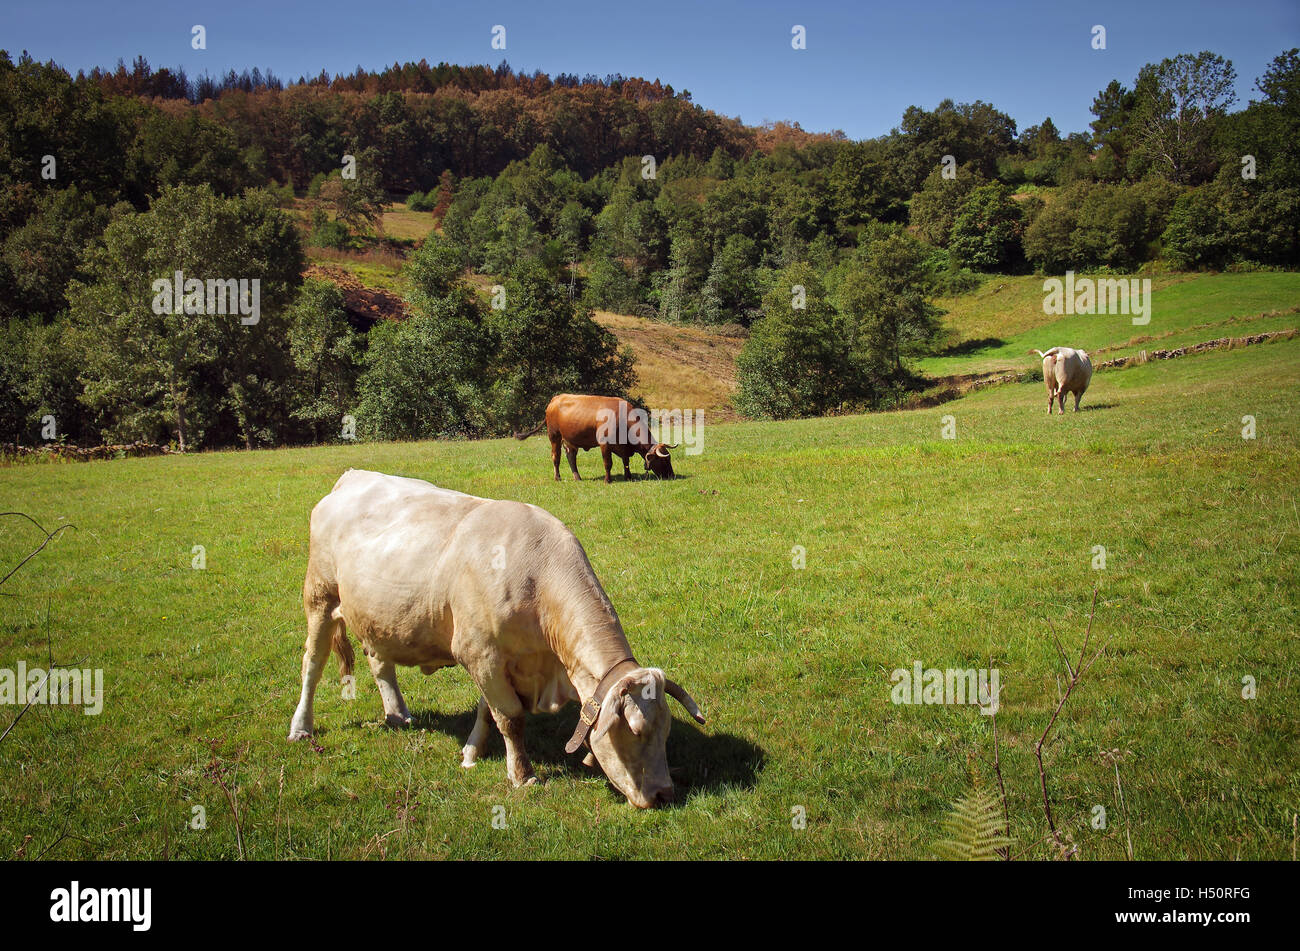 Paisaje paisaje con ganado bovino pastando en un campo verde Foto de stock